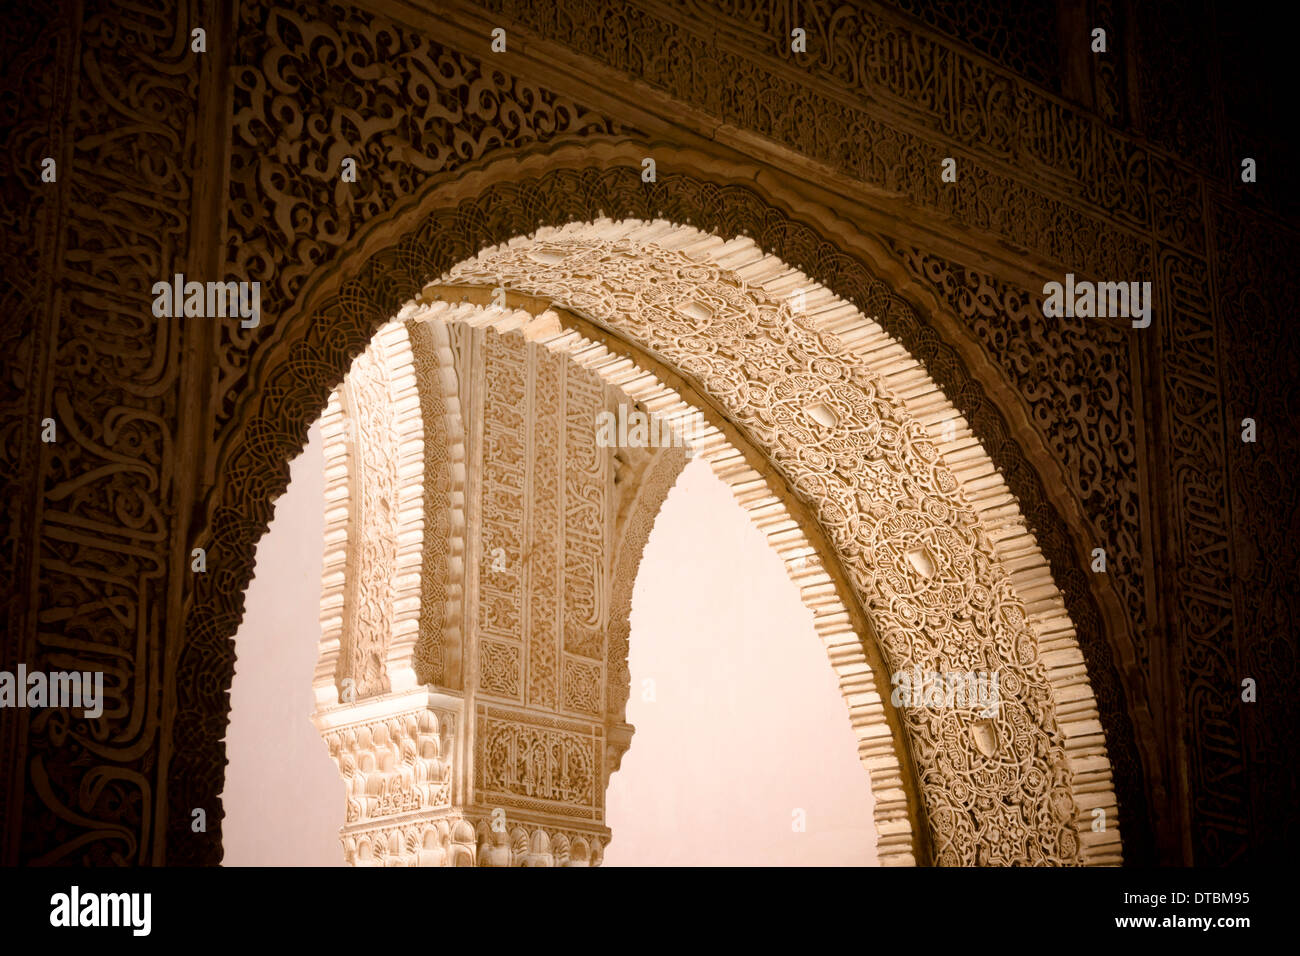 Un arco ornamentado en el hermoso palacio y jardines de la Alhambra en Granada, Andalucía, sur de España. Foto de stock